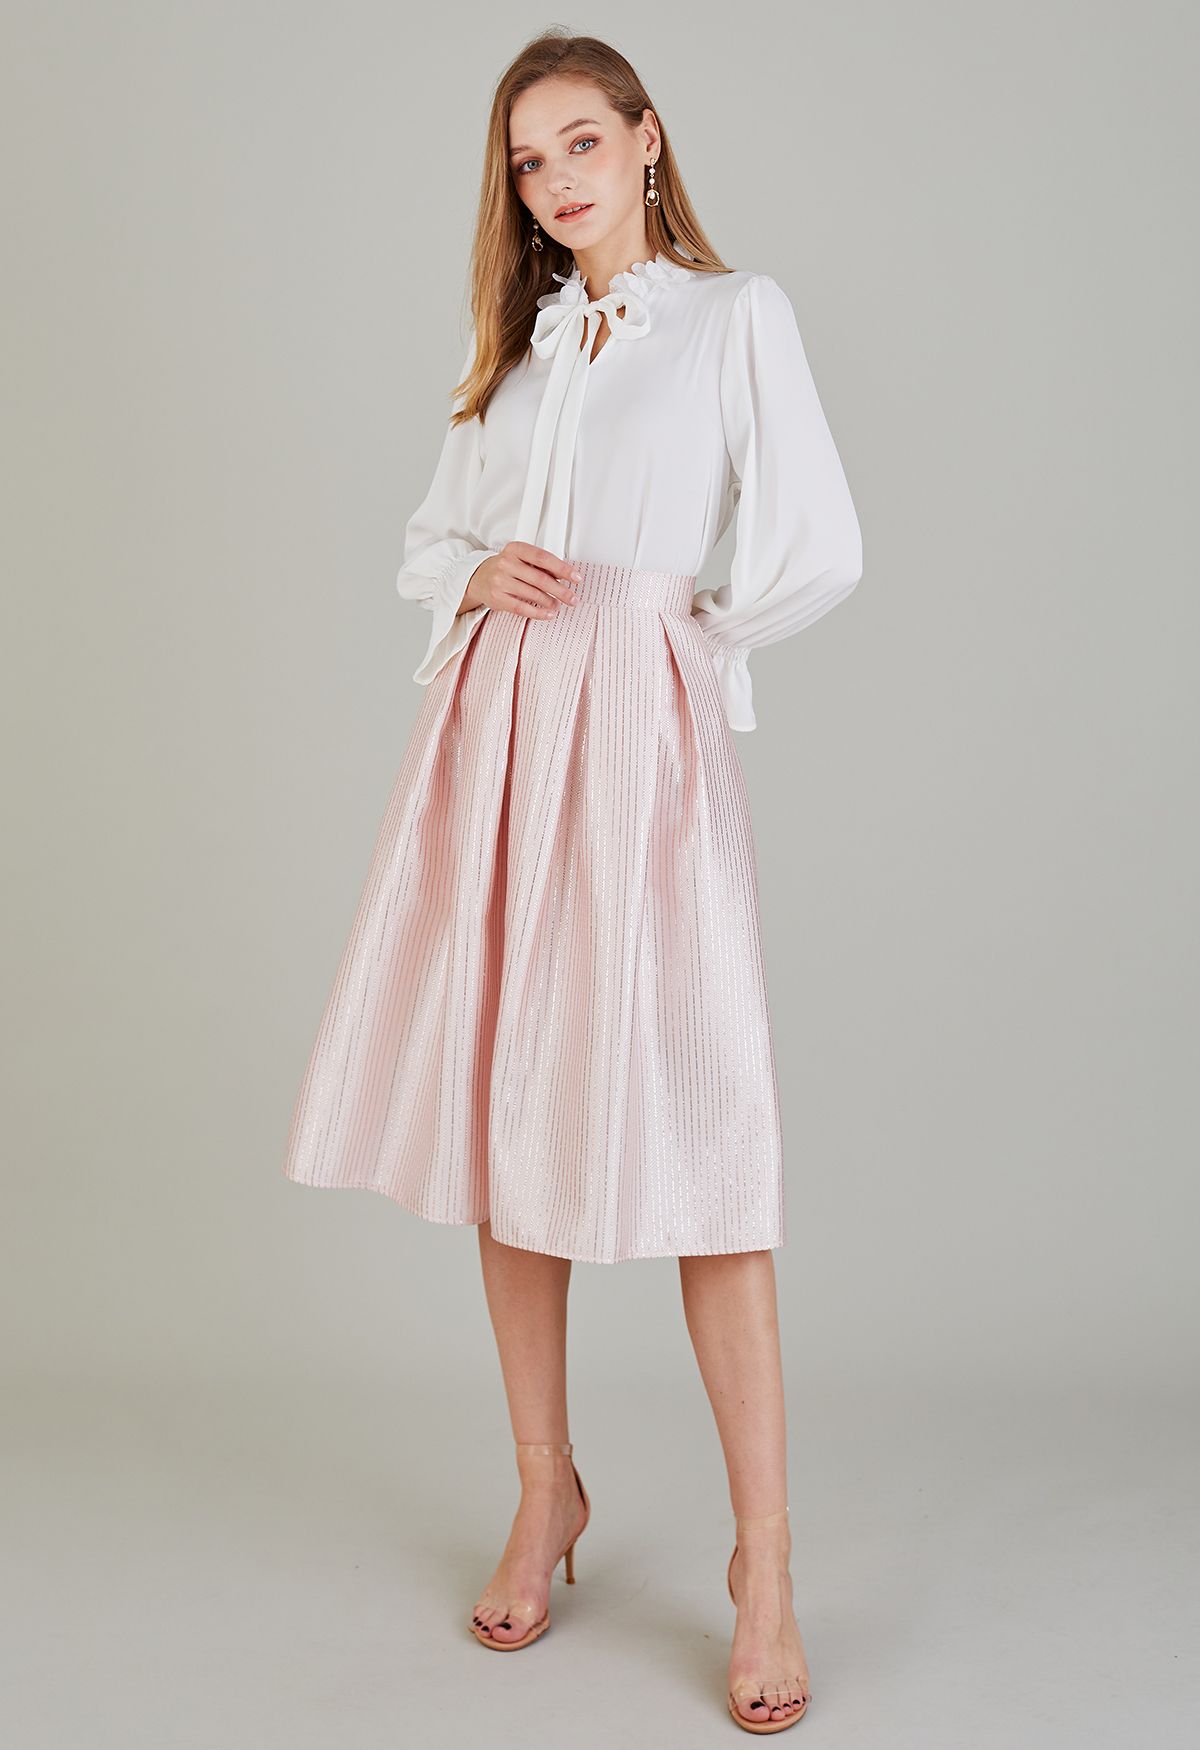 Glitter Line Jacquard Pleated Midi Skirt